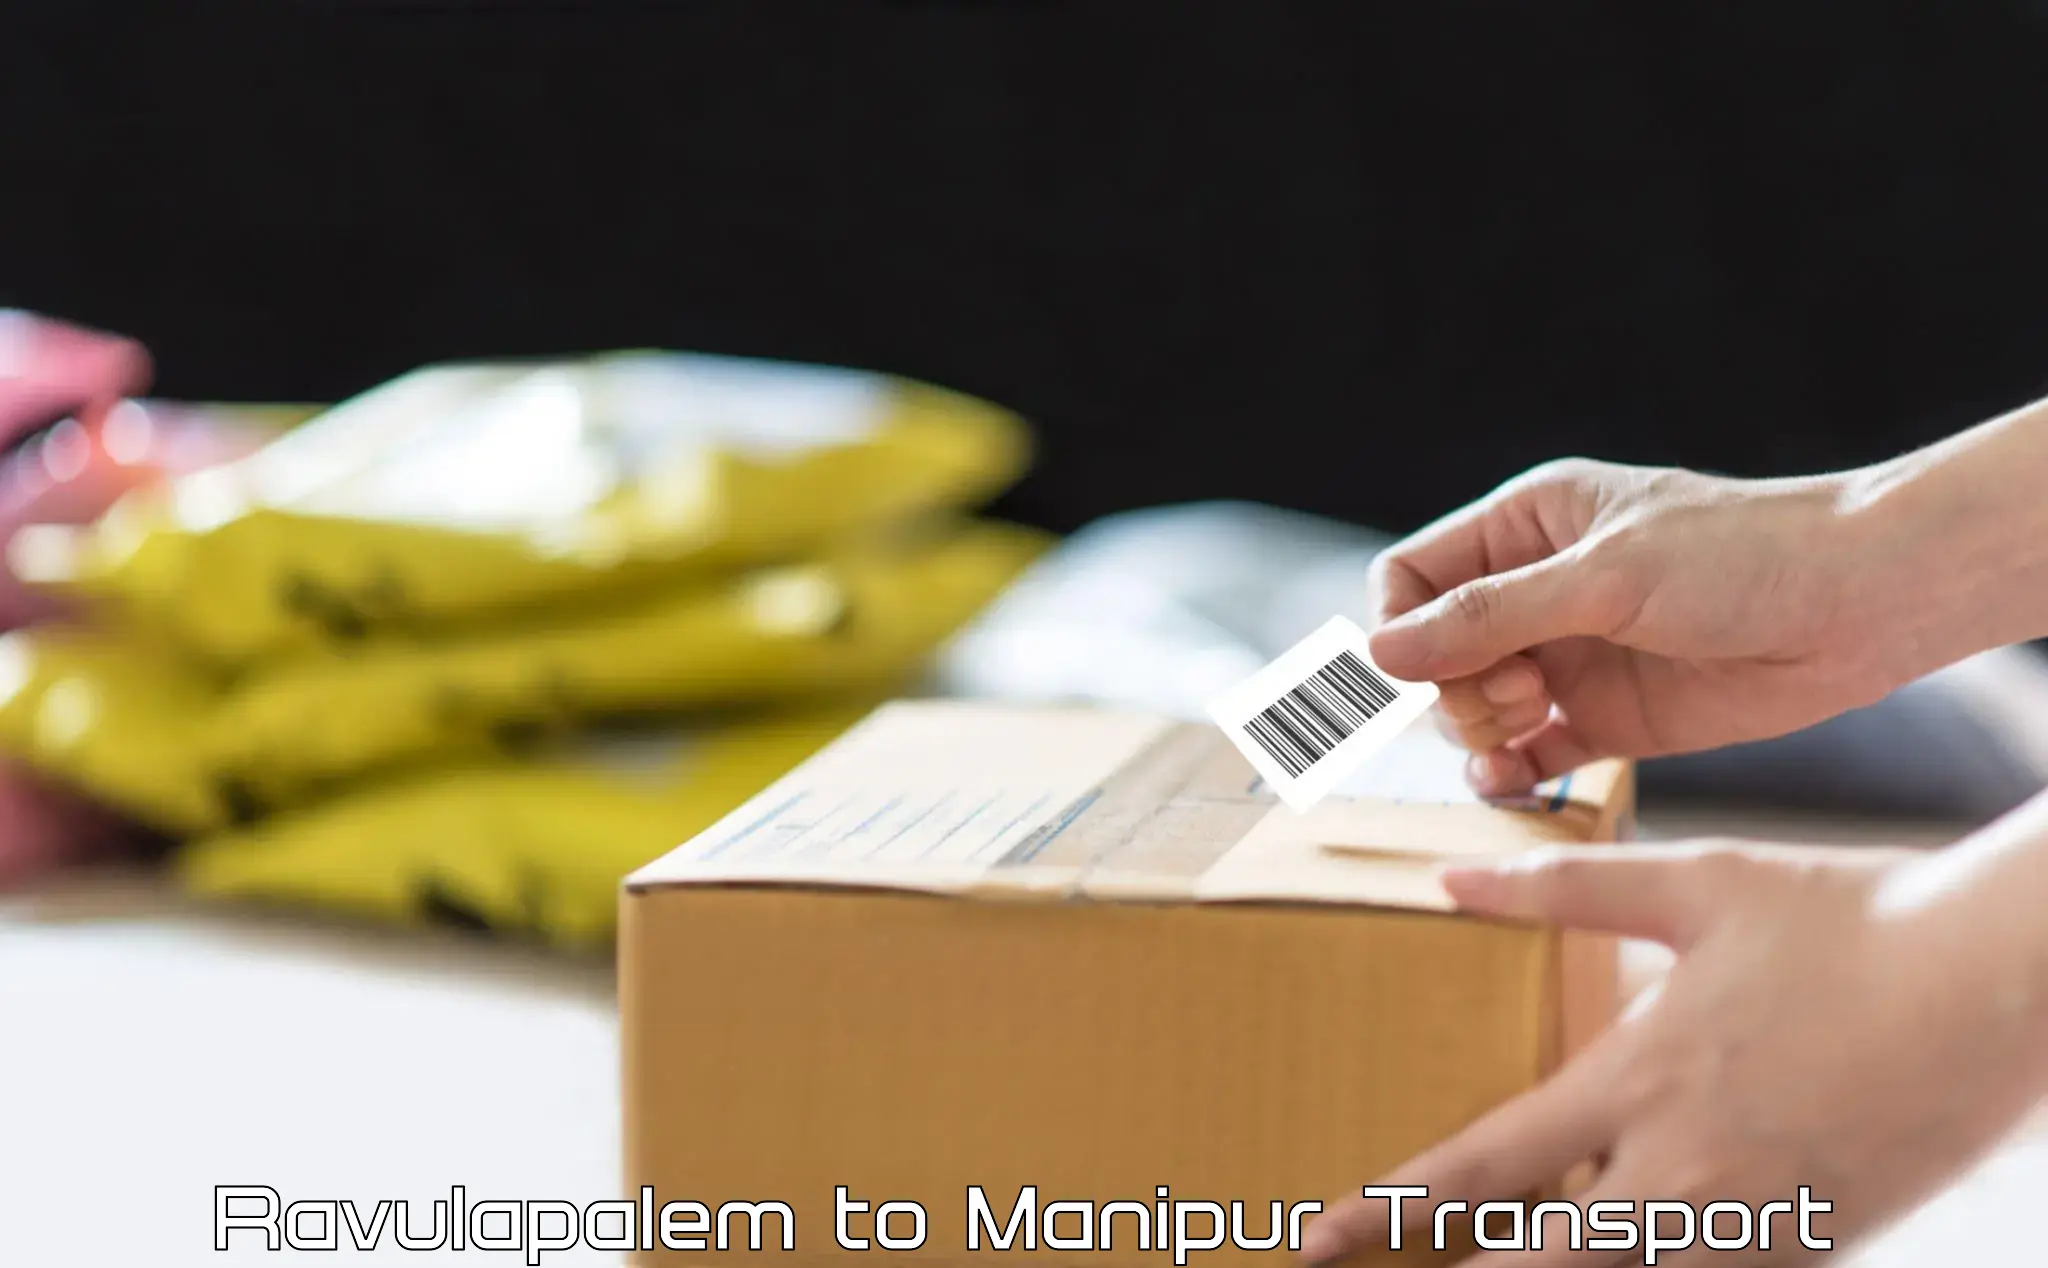 Nearest transport service Ravulapalem to Manipur